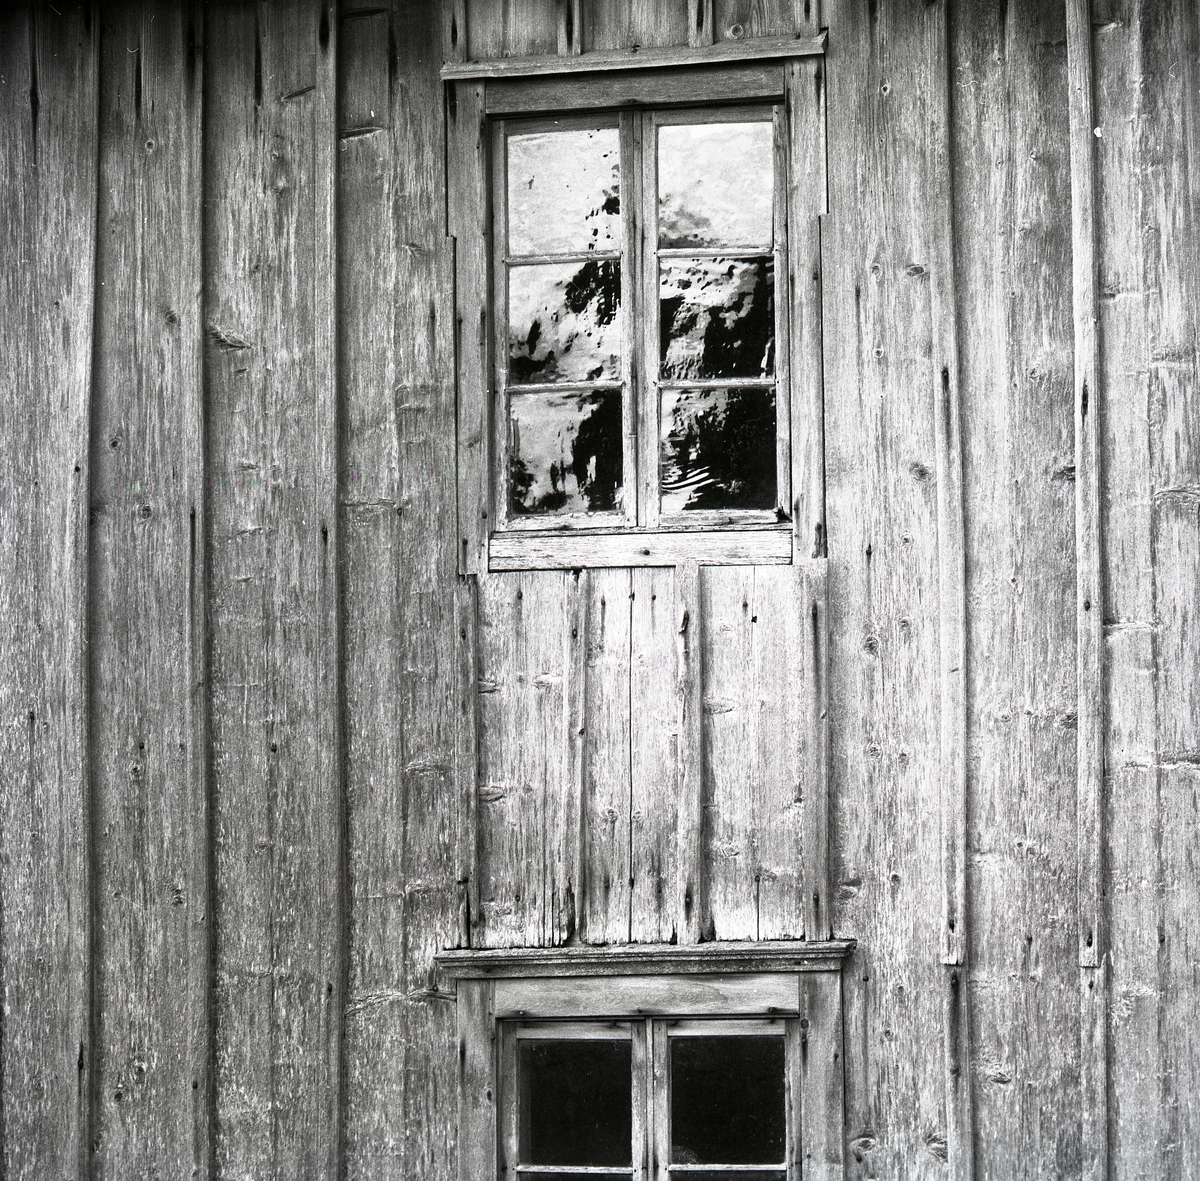 En byggnad i trä med fönster och fönsterkarmar. Utegårn 24 augusti 1990.